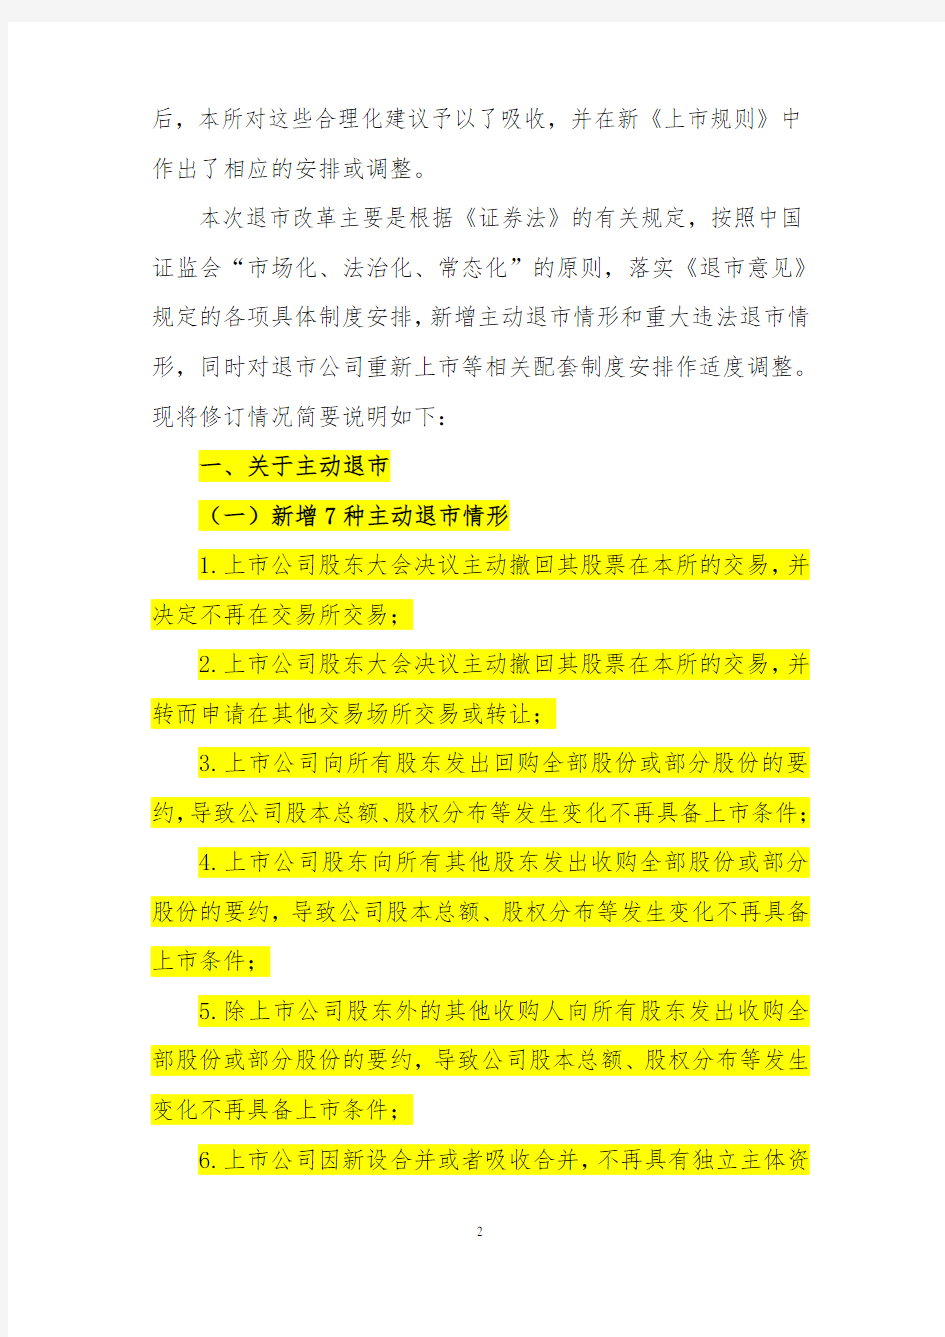 《上海证券交易所股票上市规则(退市部分)》2014年修订说明解析